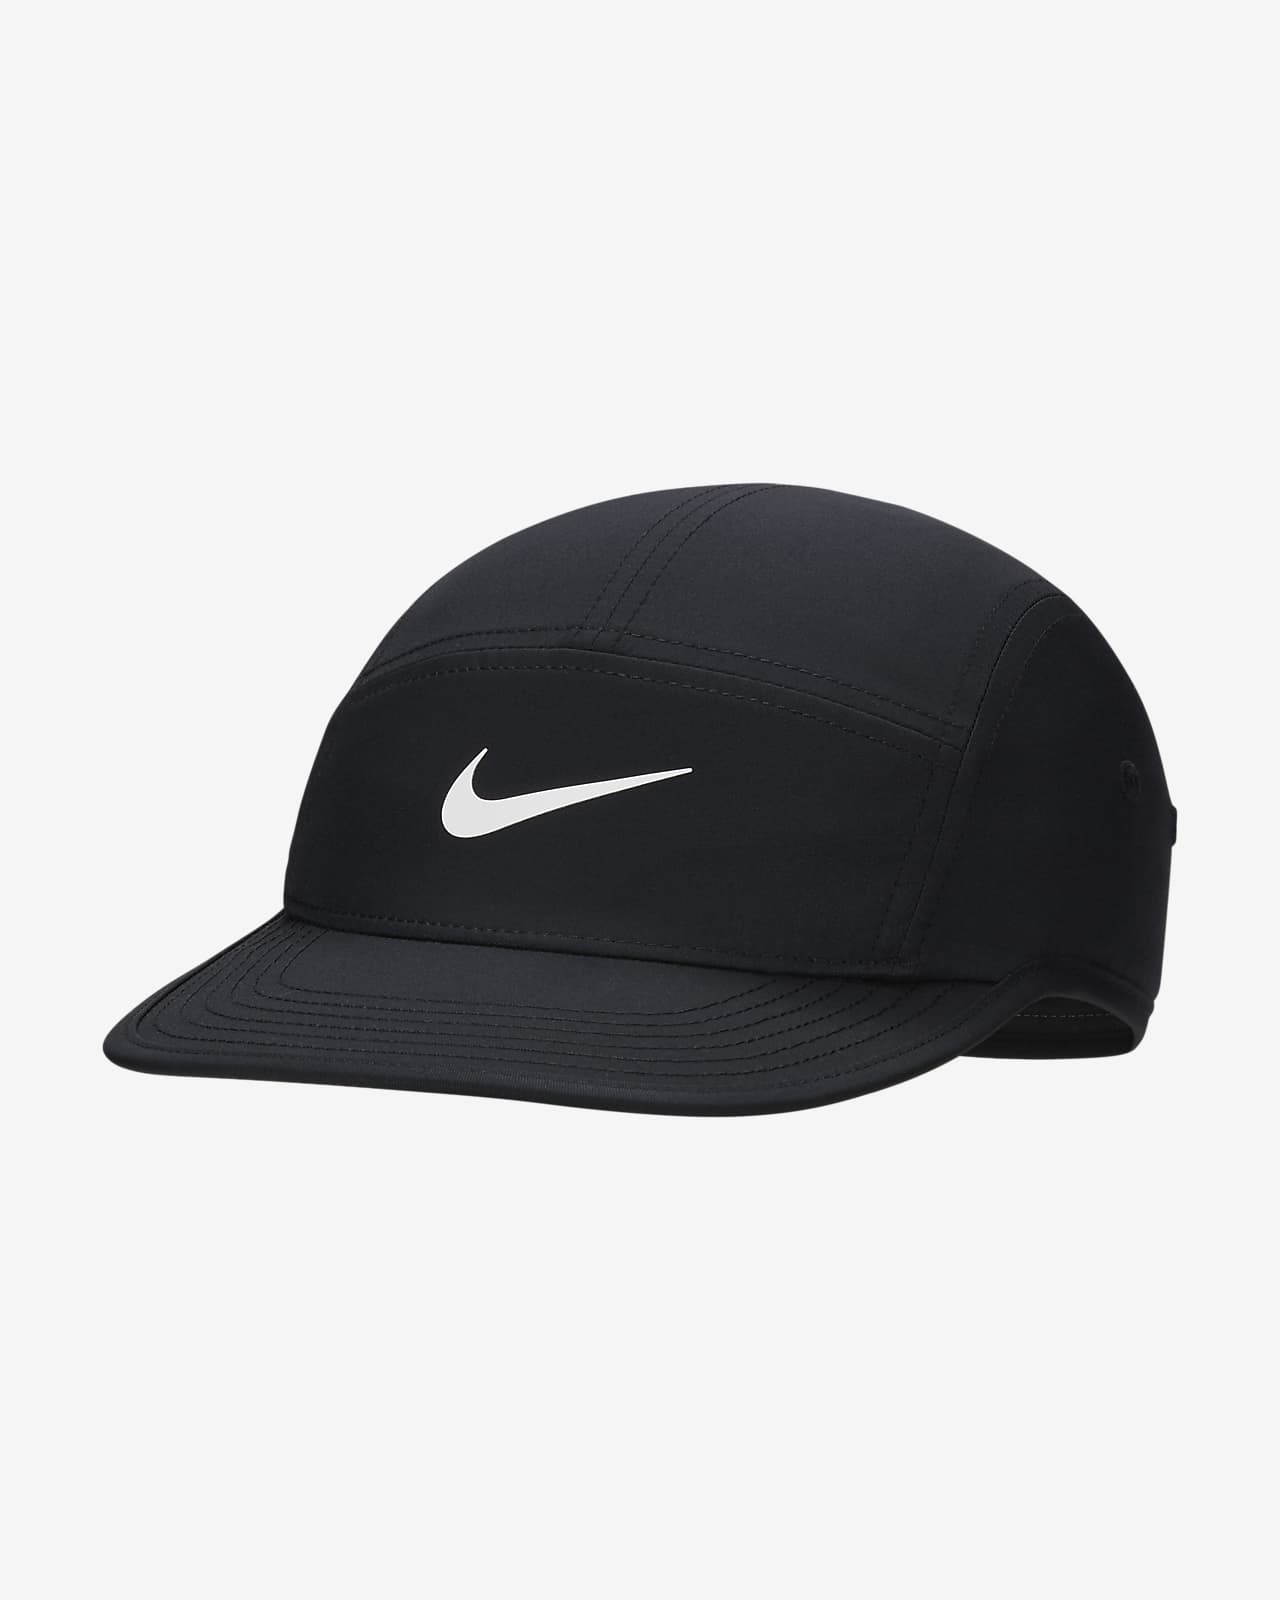 Εύκαμπτο καπέλο jockey με σχέδιο Swoosh Nike Dri-FIT Fly